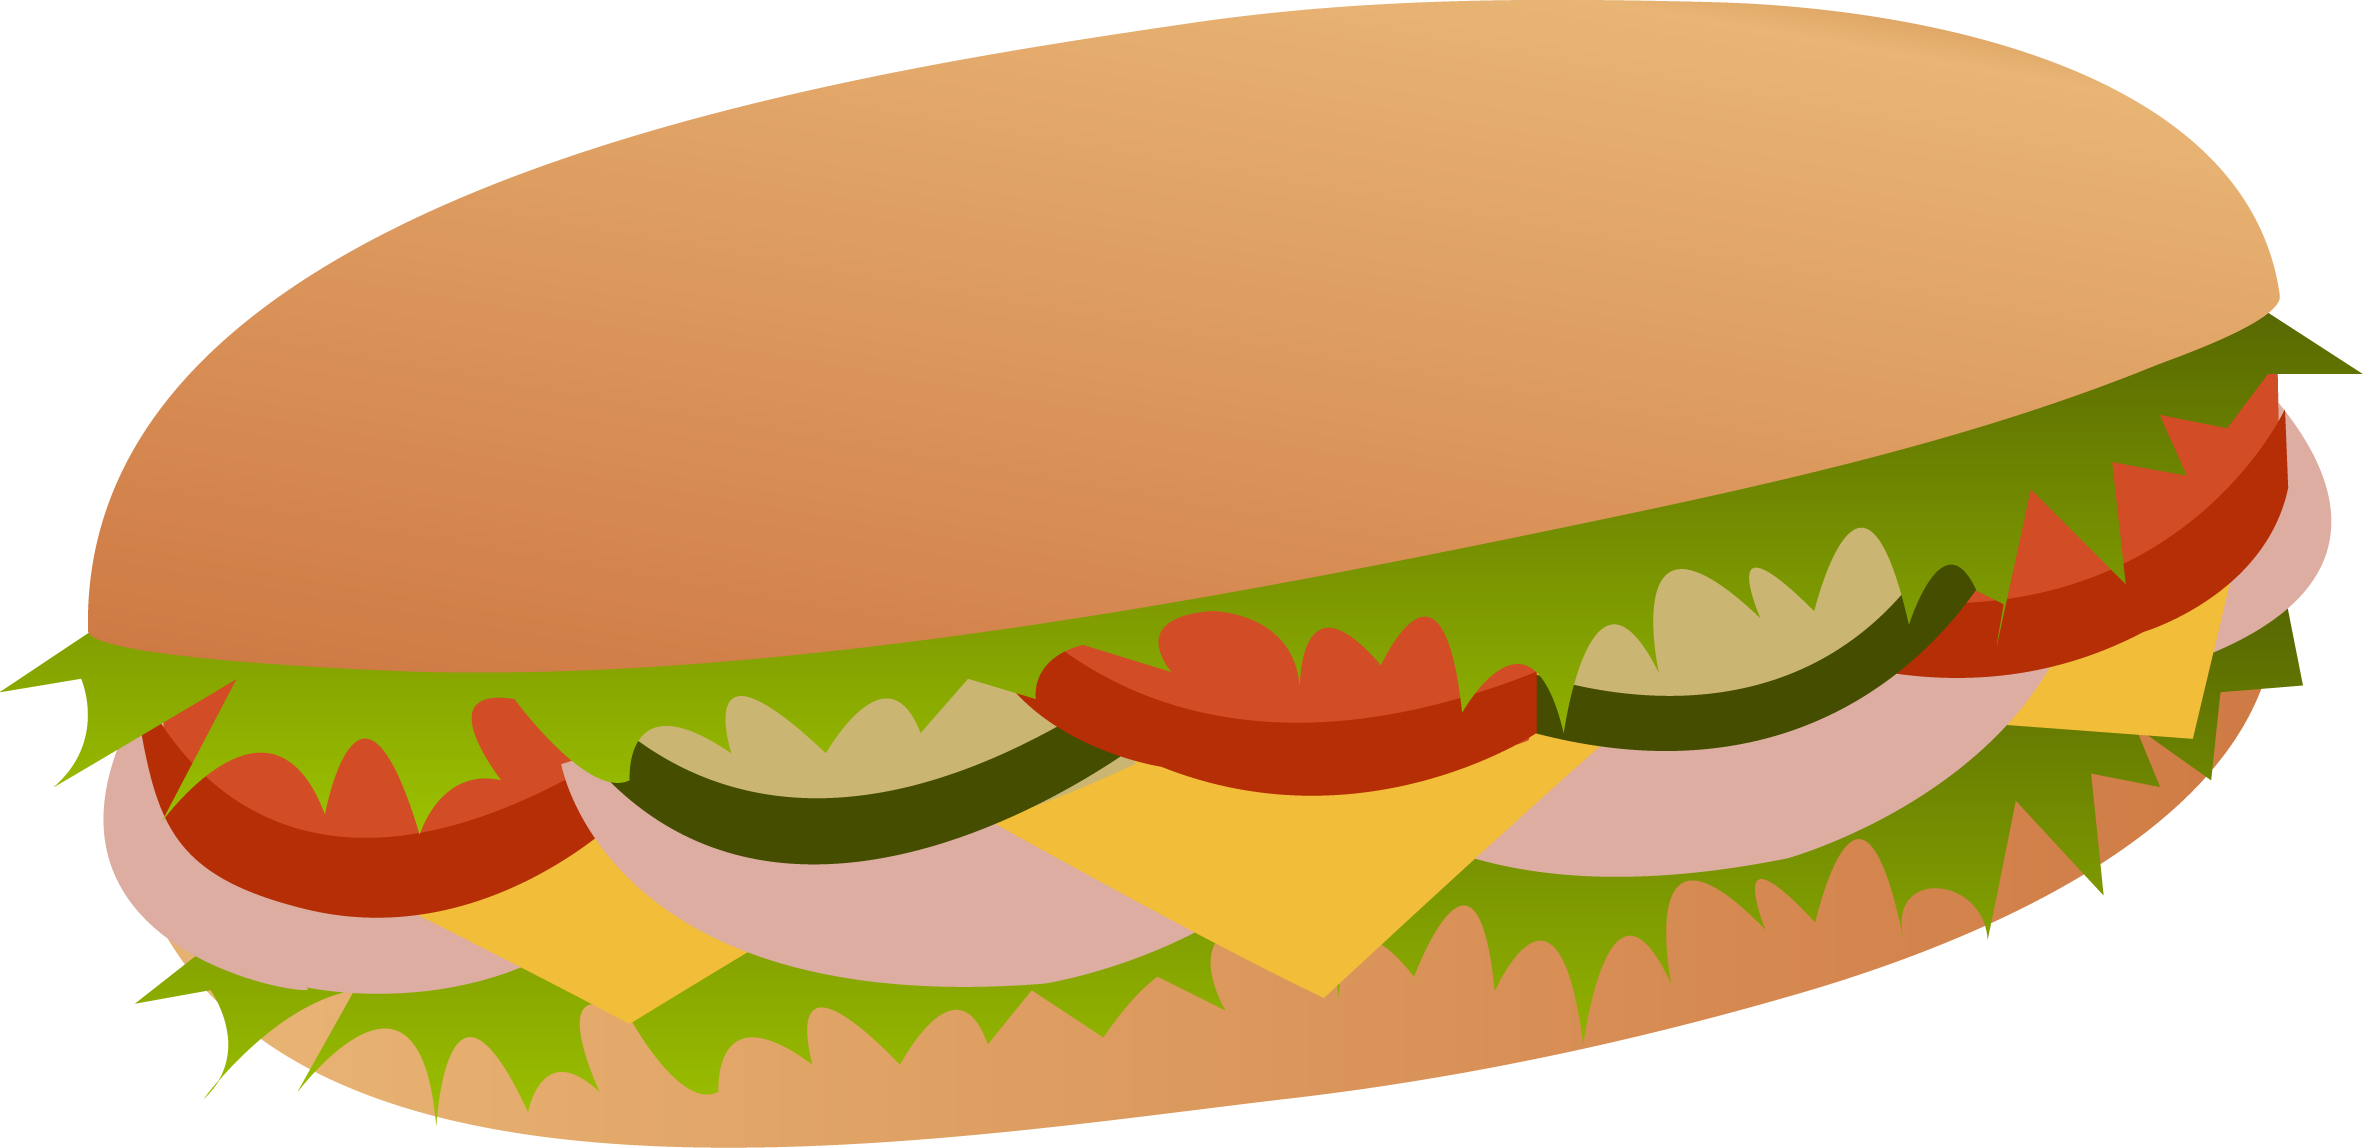 sub sandwich drawing